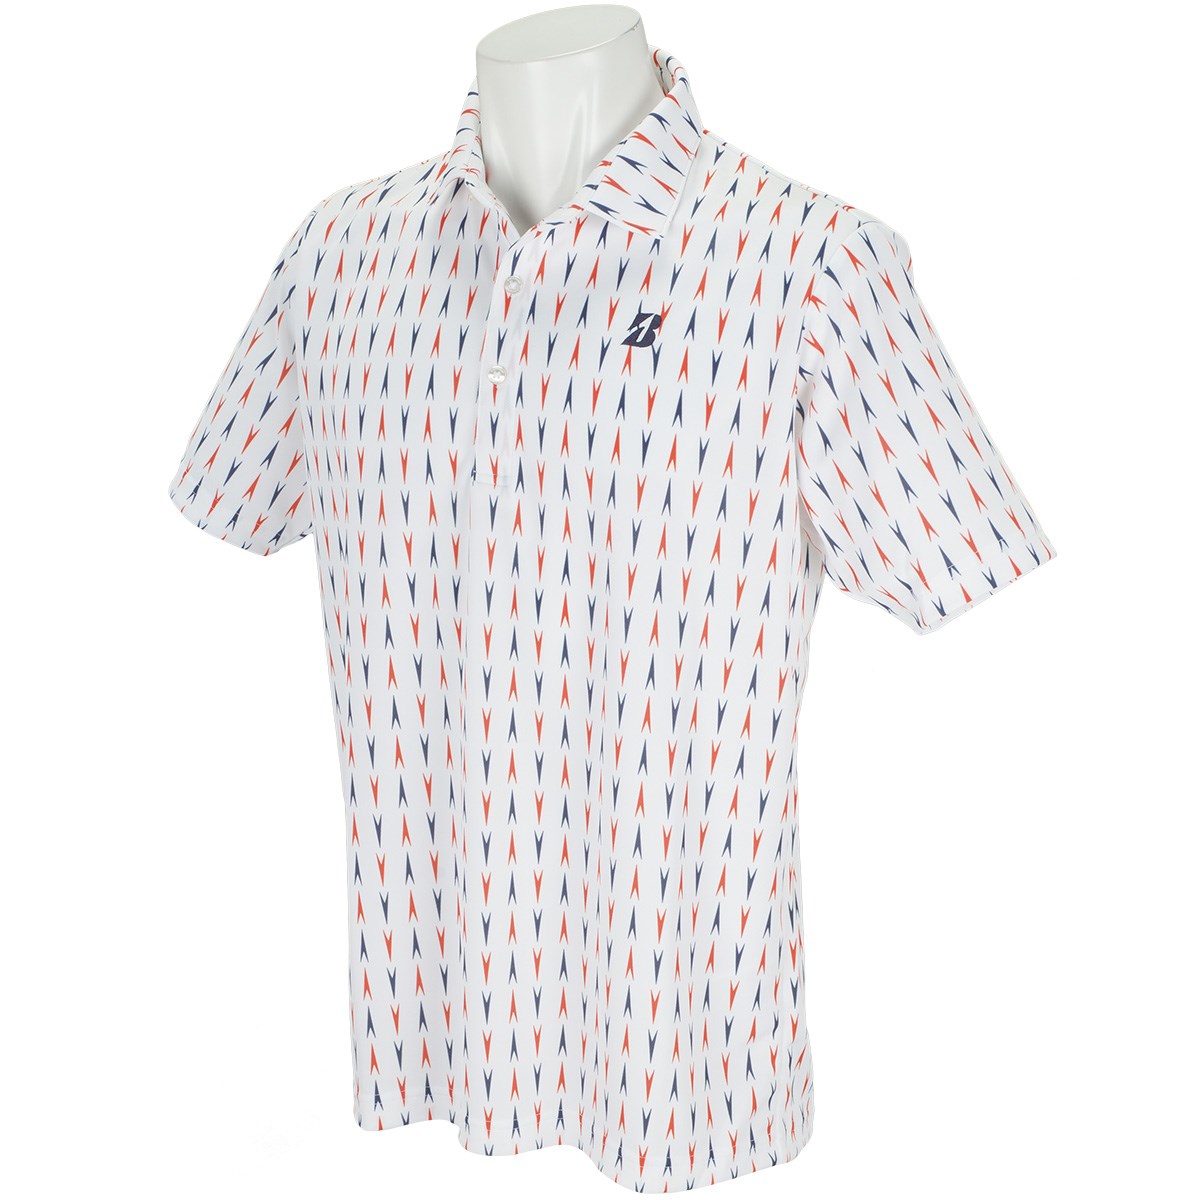 「ブリヂストン(BRIDGESTONE GOLF) 半袖ポロシャツ 」（ポロシャツ・シャツ）- ゴルフ(GOLF)用品のネット通販